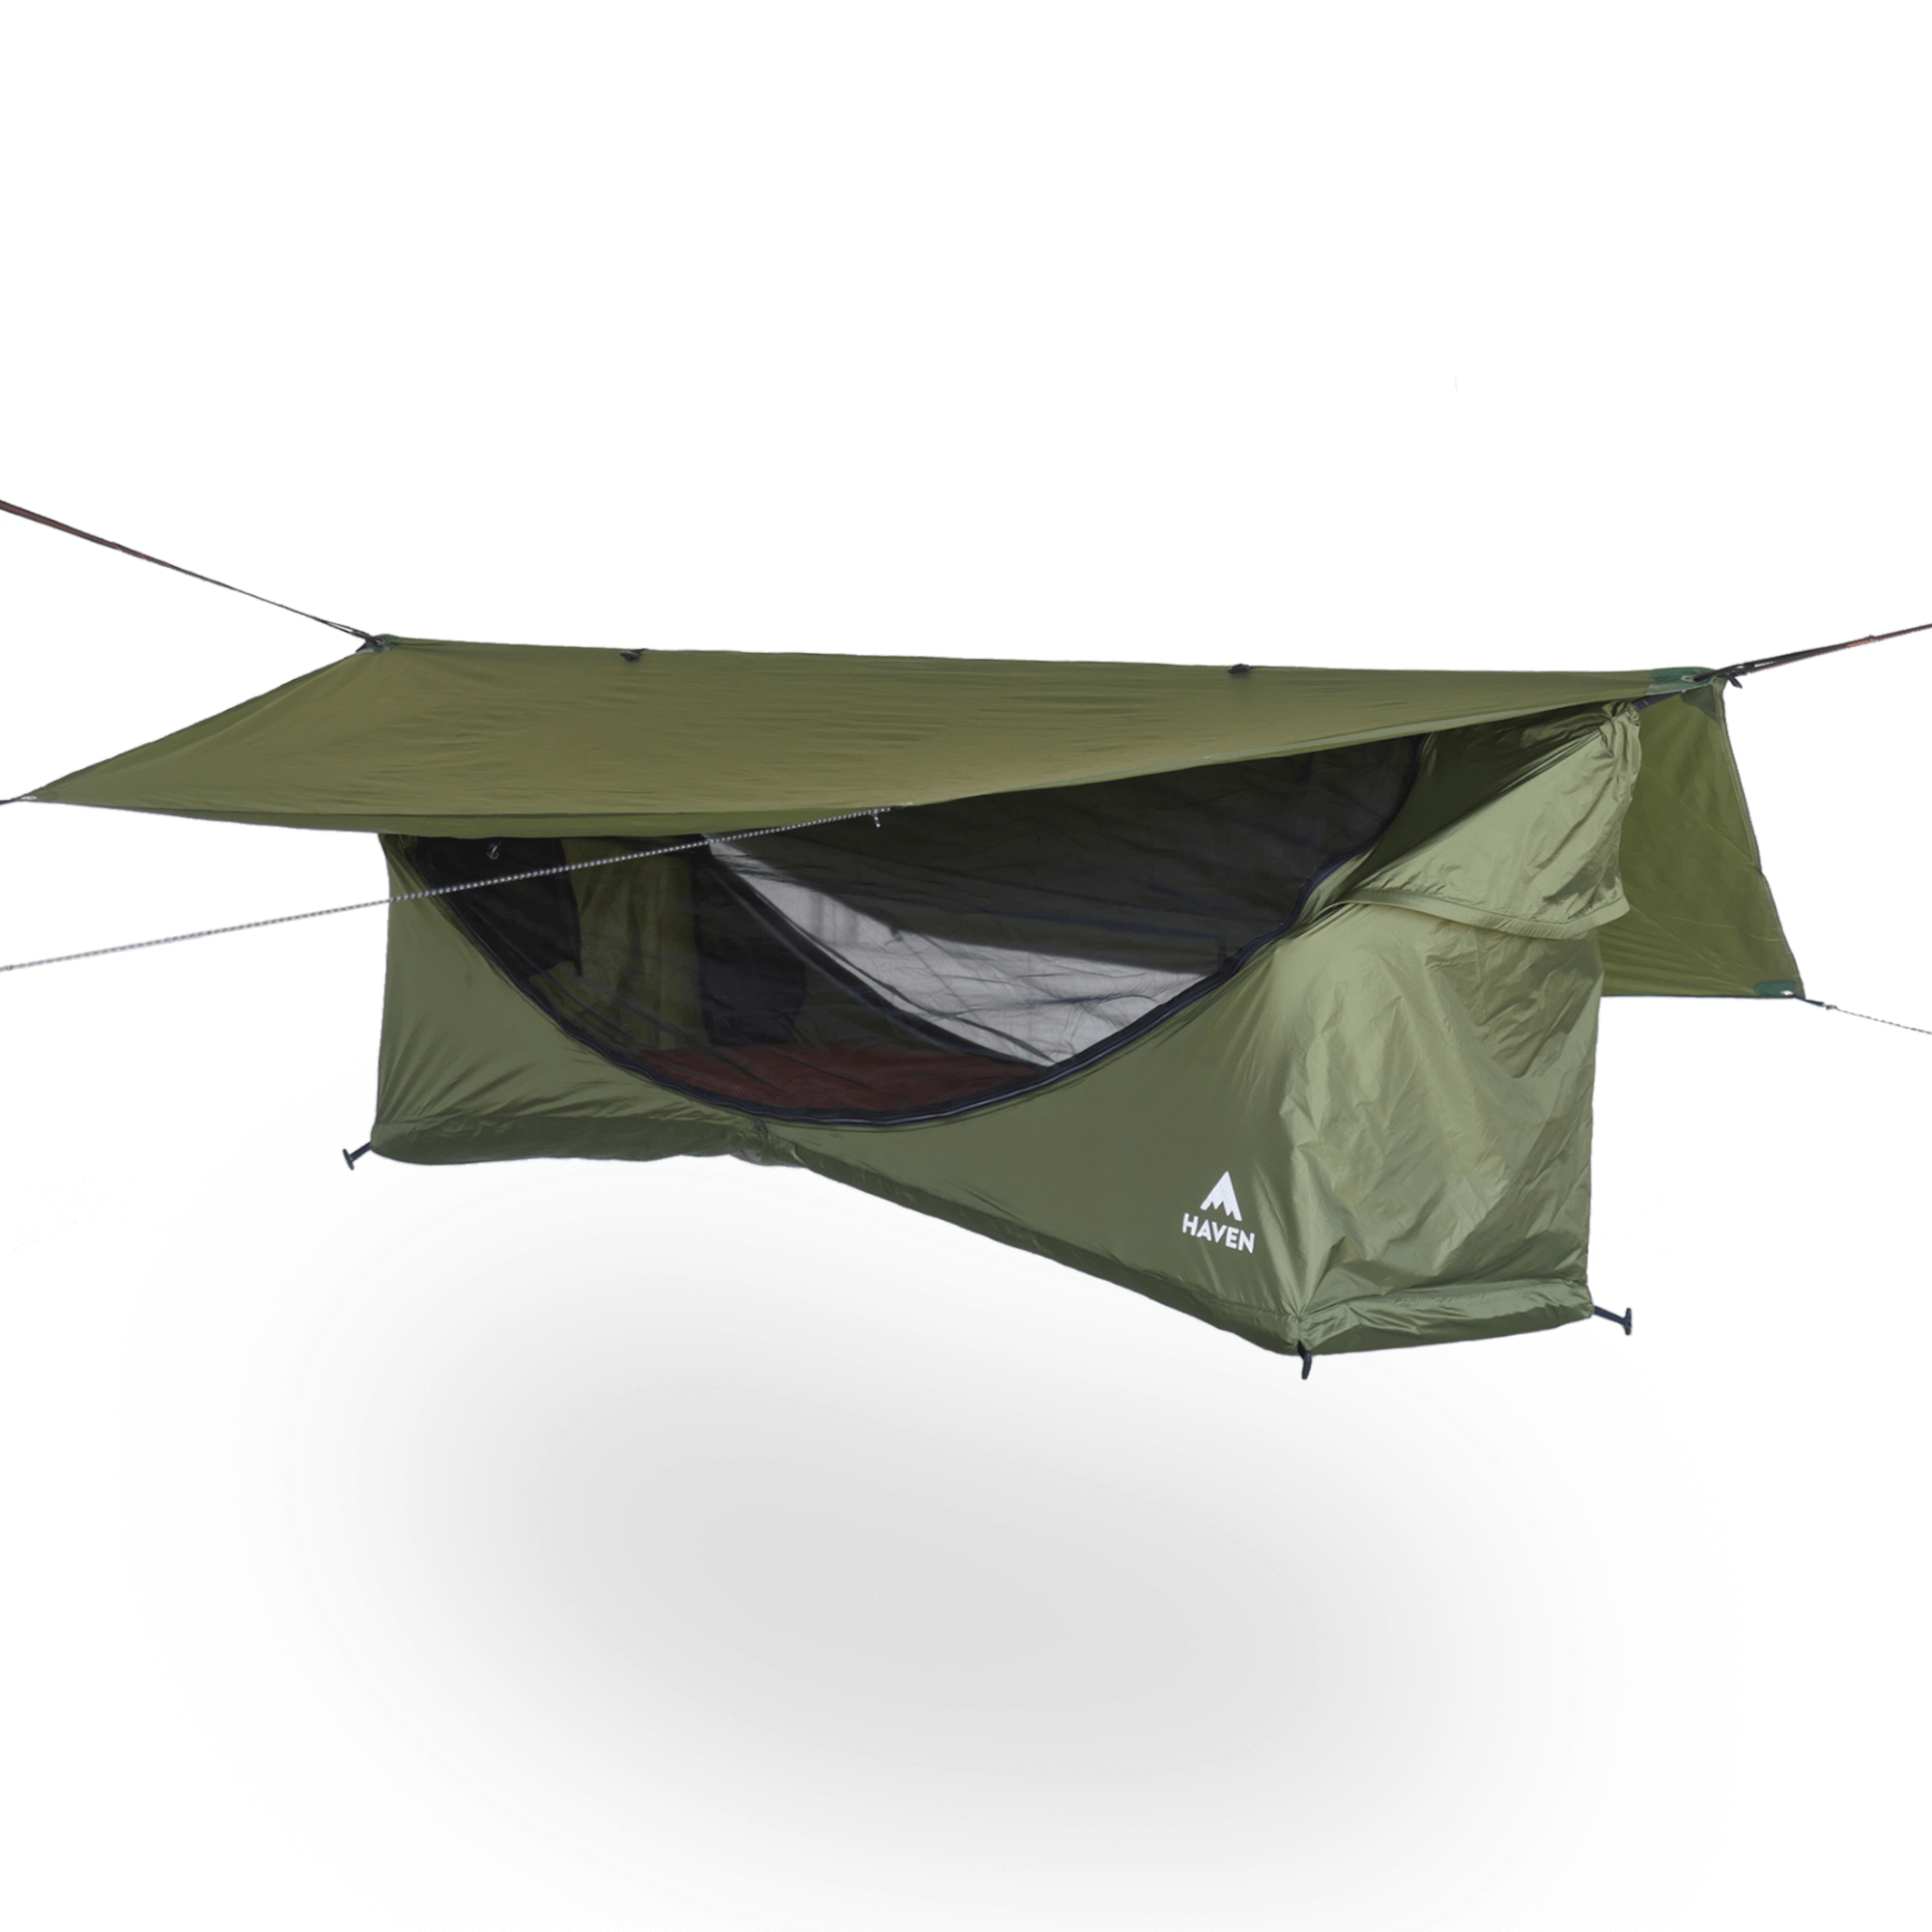 haven tent